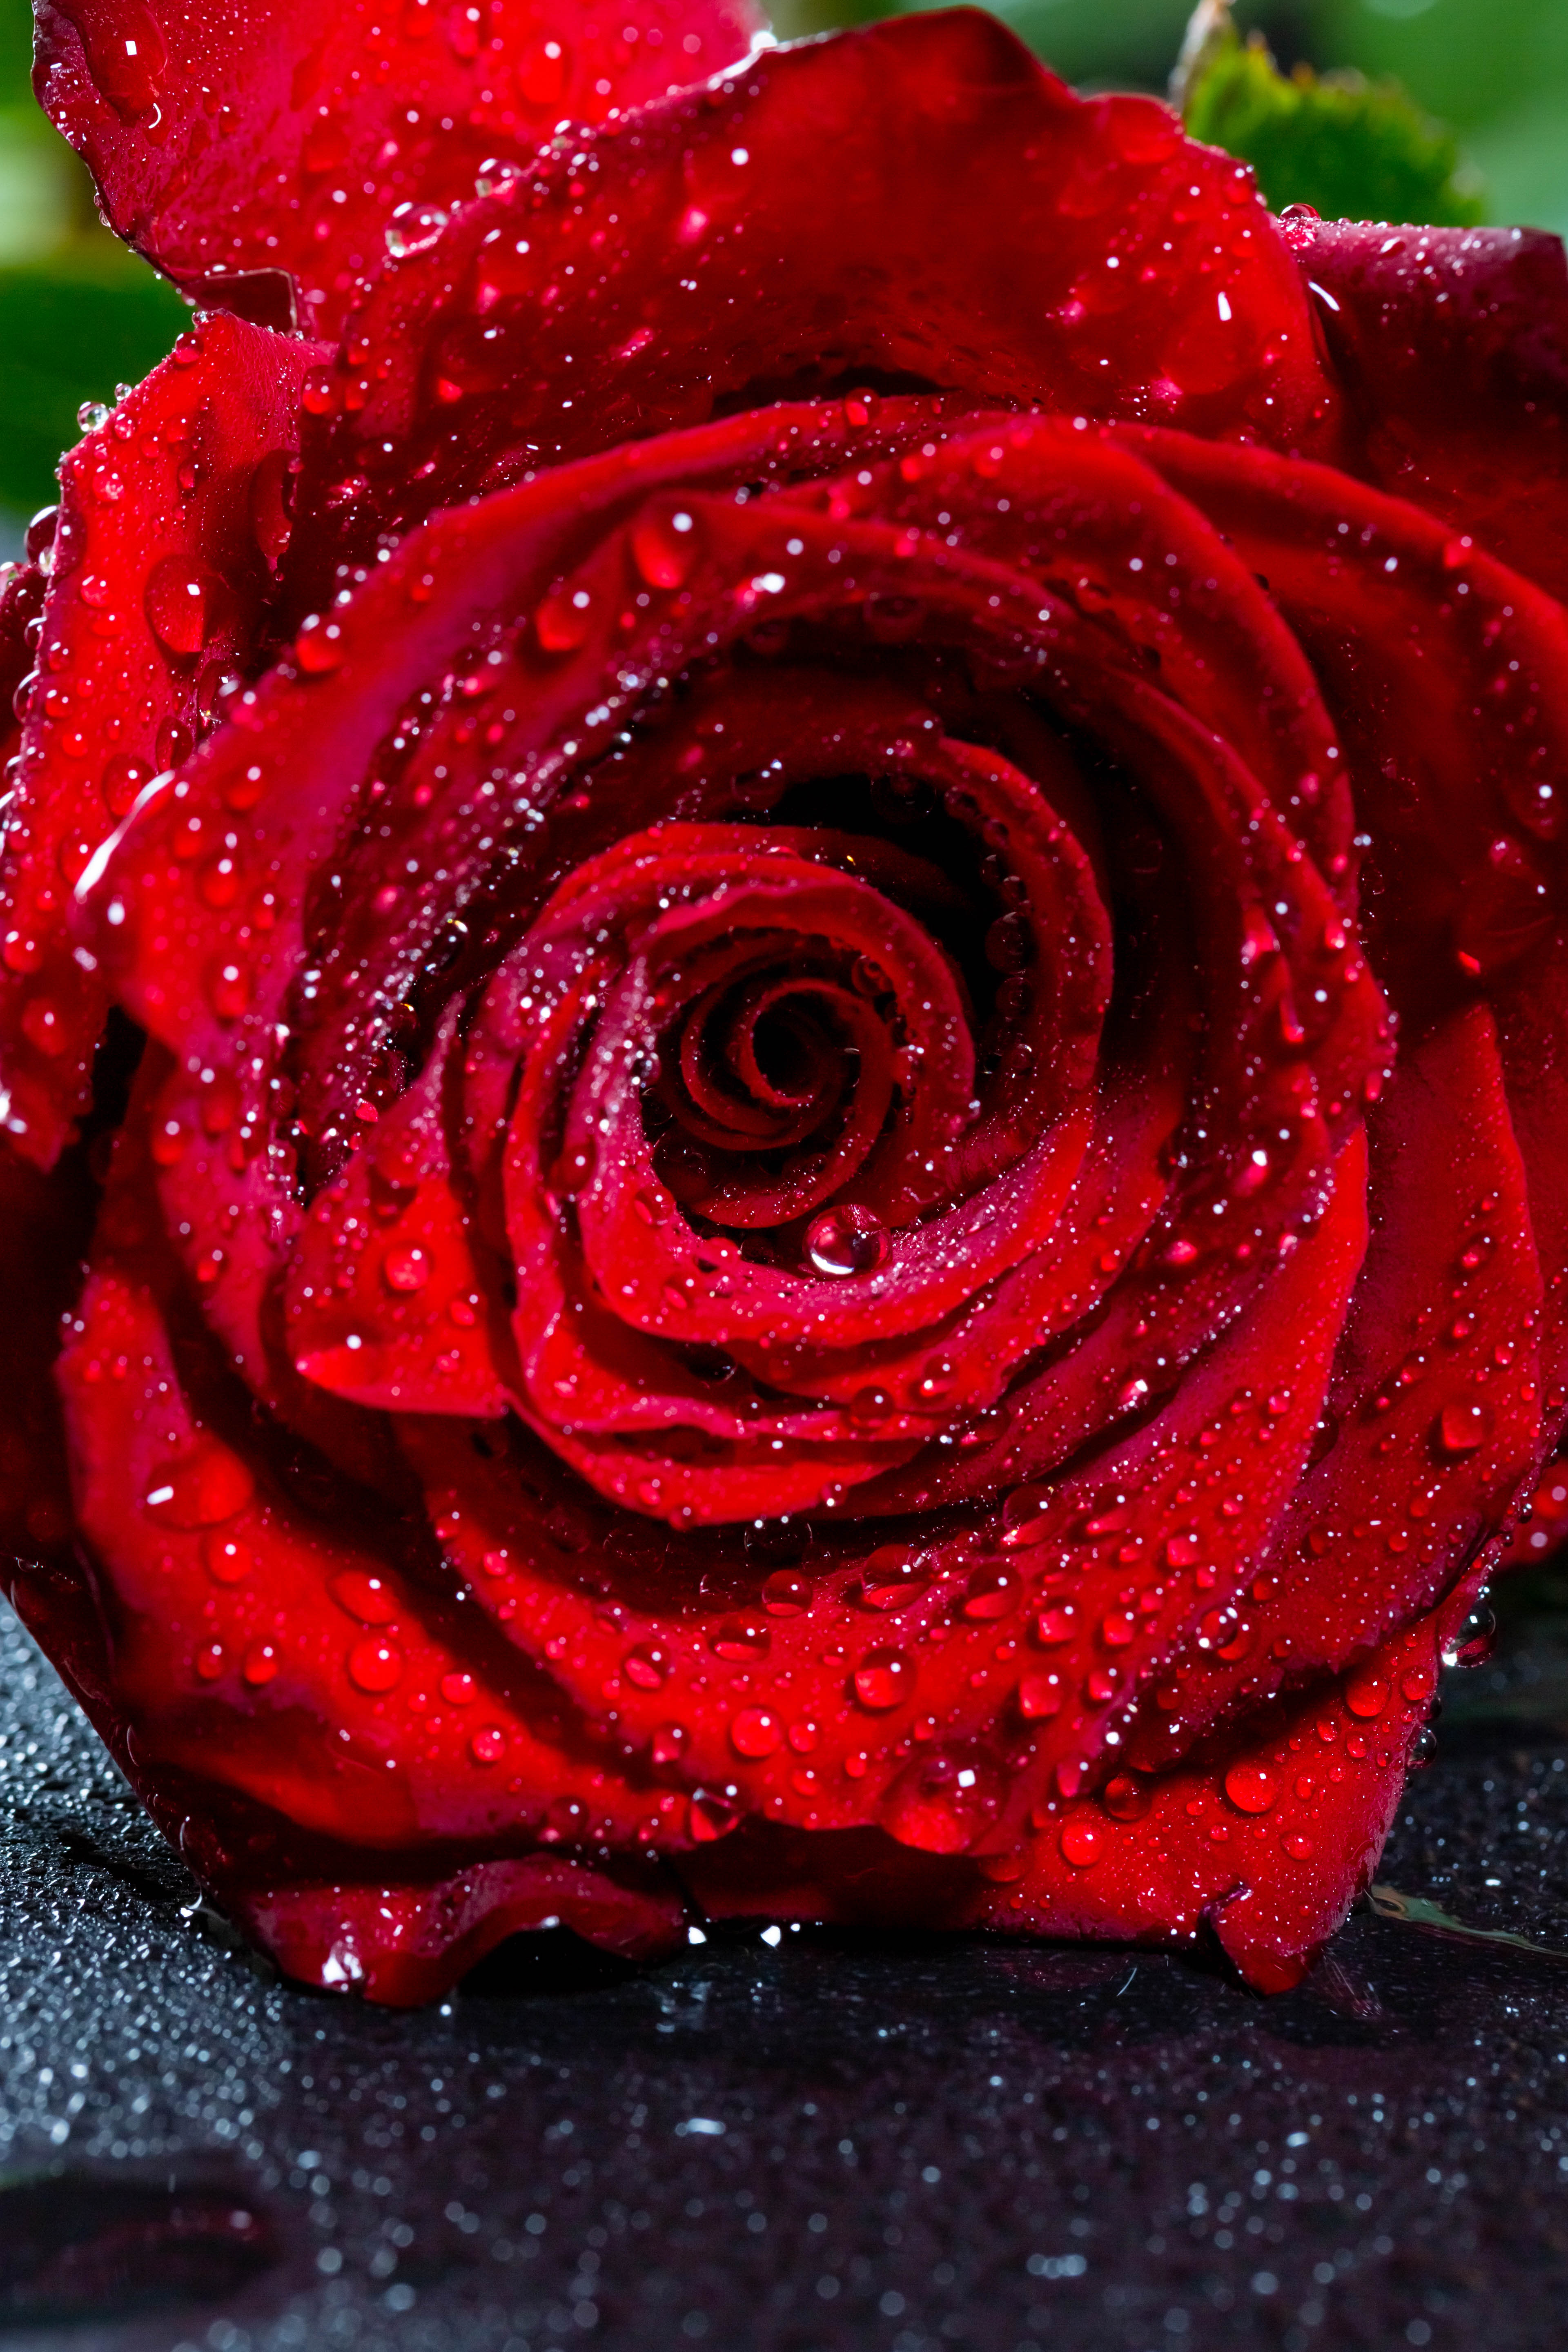 Tải hình nền hoa hồng đỏ: Hãy mang lại cảm giác tươi mới cho điện thoại của bạn bằng cách tải xuống hình nền hoa hồng đỏ. Cảm nhận màu sắc rực rỡ và đầy cảm hứng của nó, để thêm sự sáng tạo cho cuộc sống của bạn.